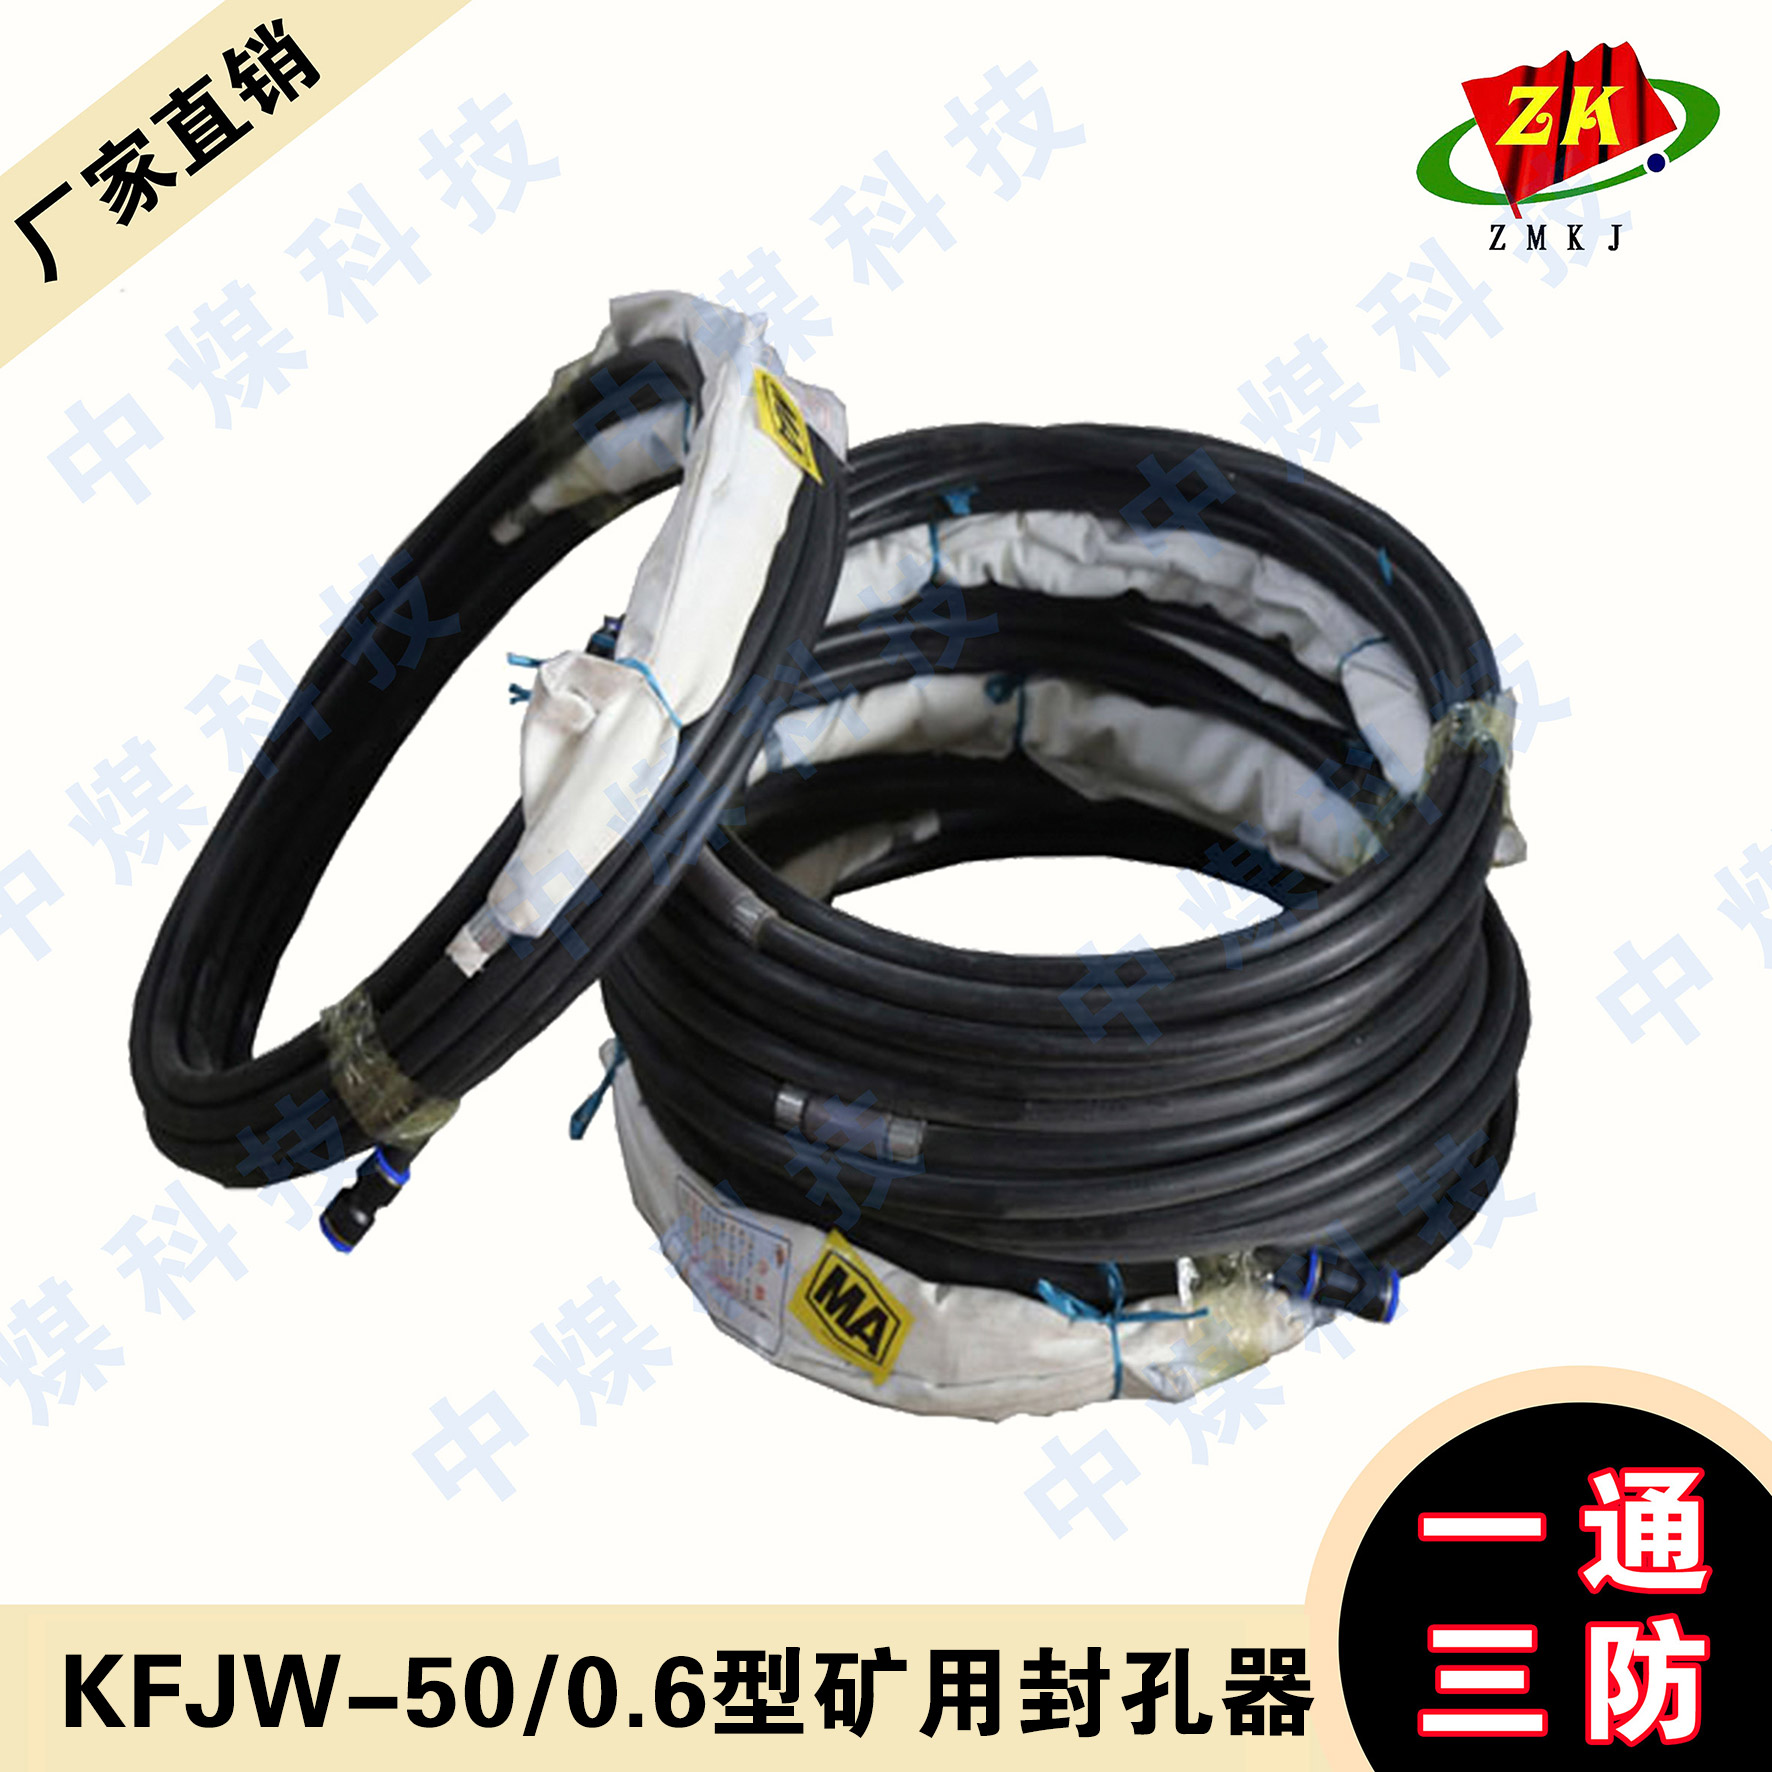 FKJW-50/0.6型矿用封孔批发